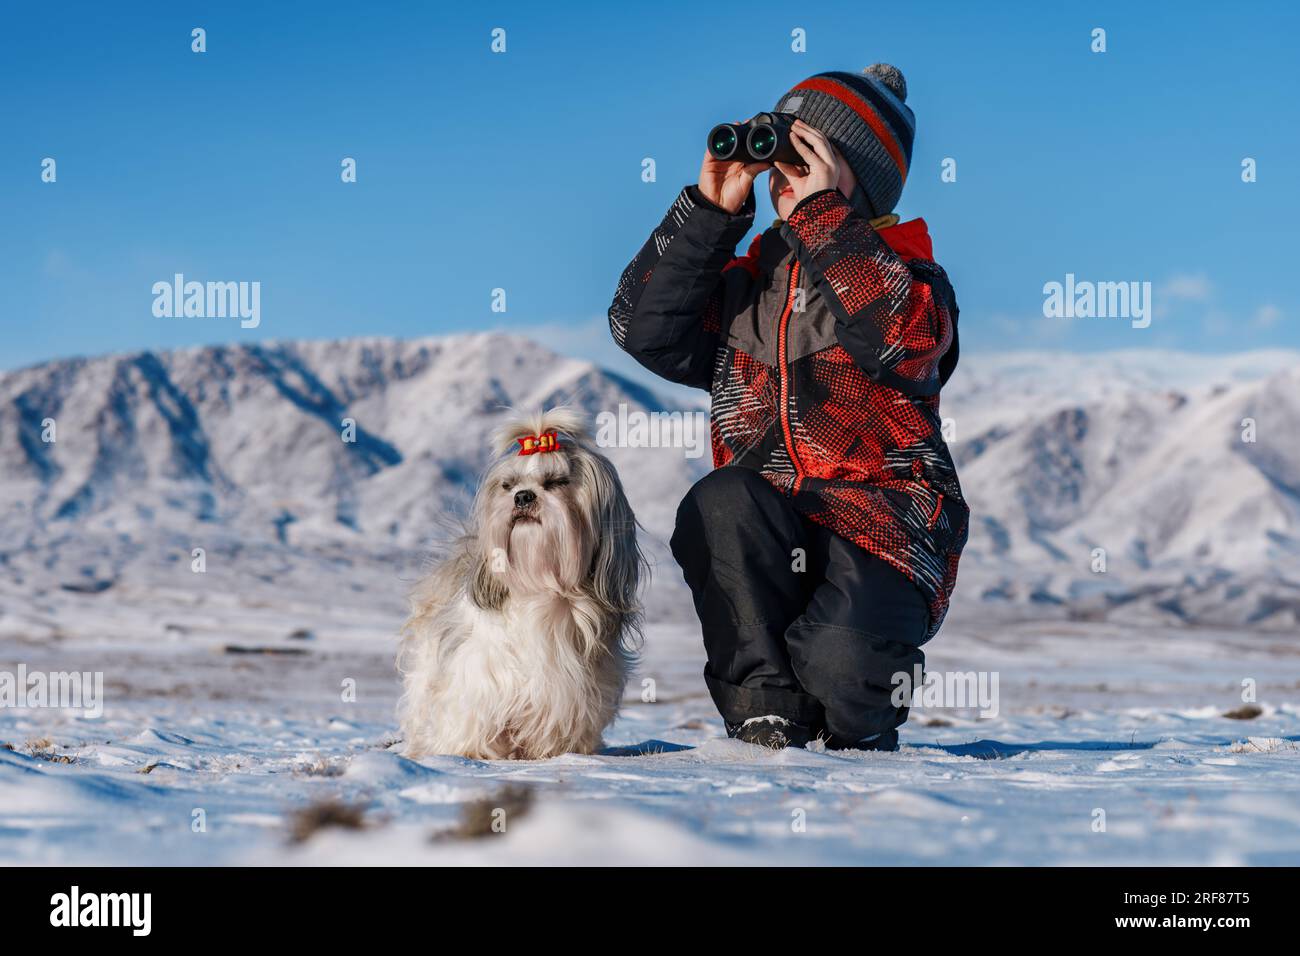 Bambino con binocolo e cane shih tzu in posa sullo sfondo delle montagne in inverno Foto Stock